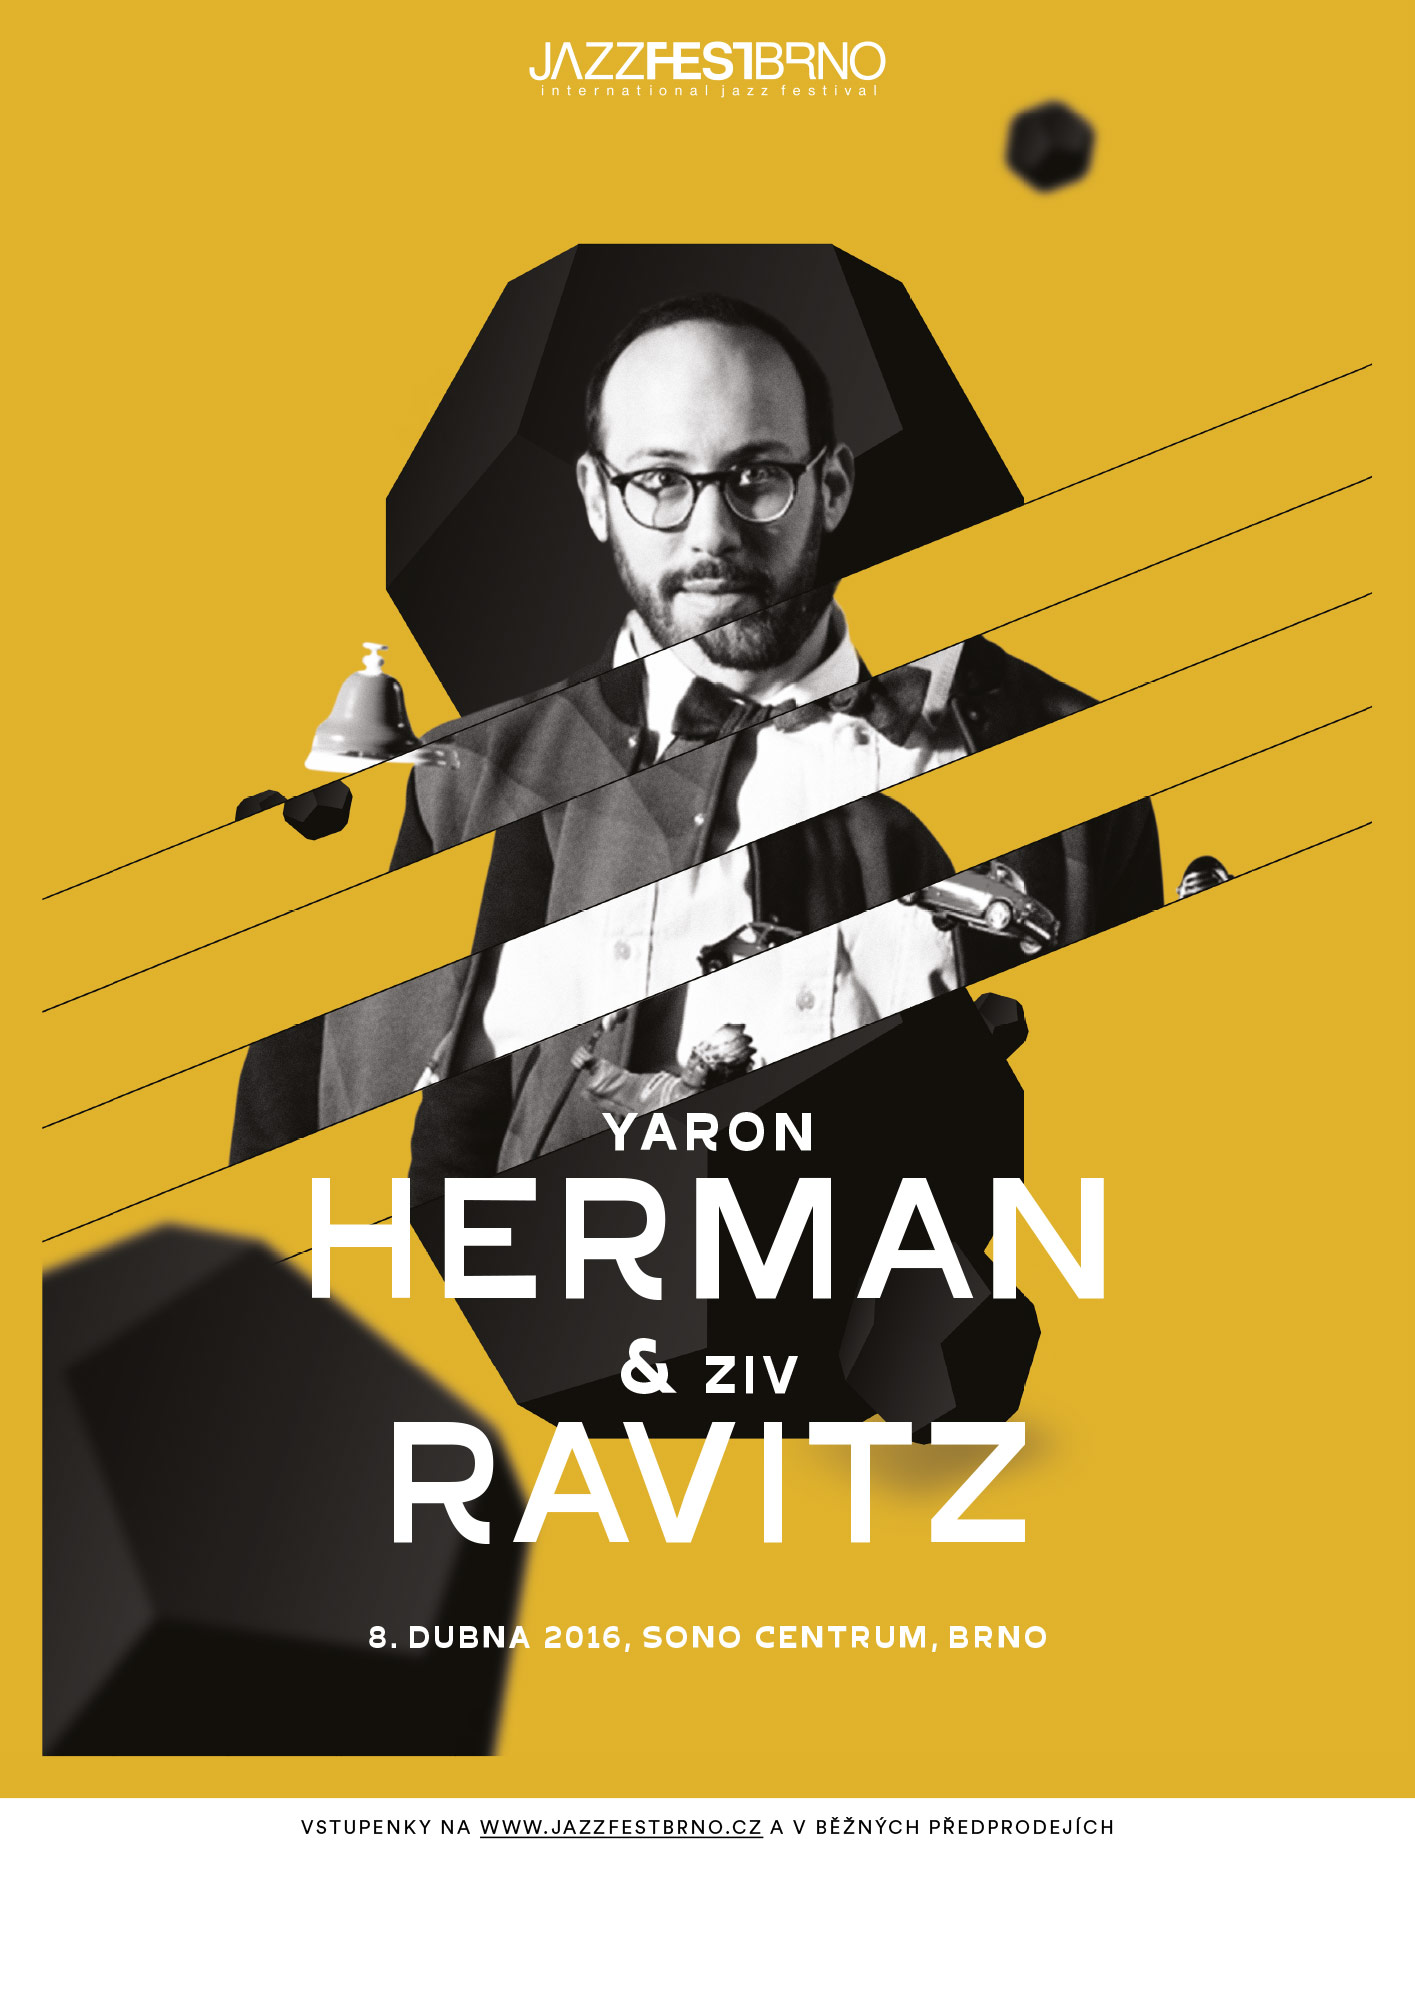 Jazzfestbrno 2016 - Yaron Herman & Ziv Ravitz